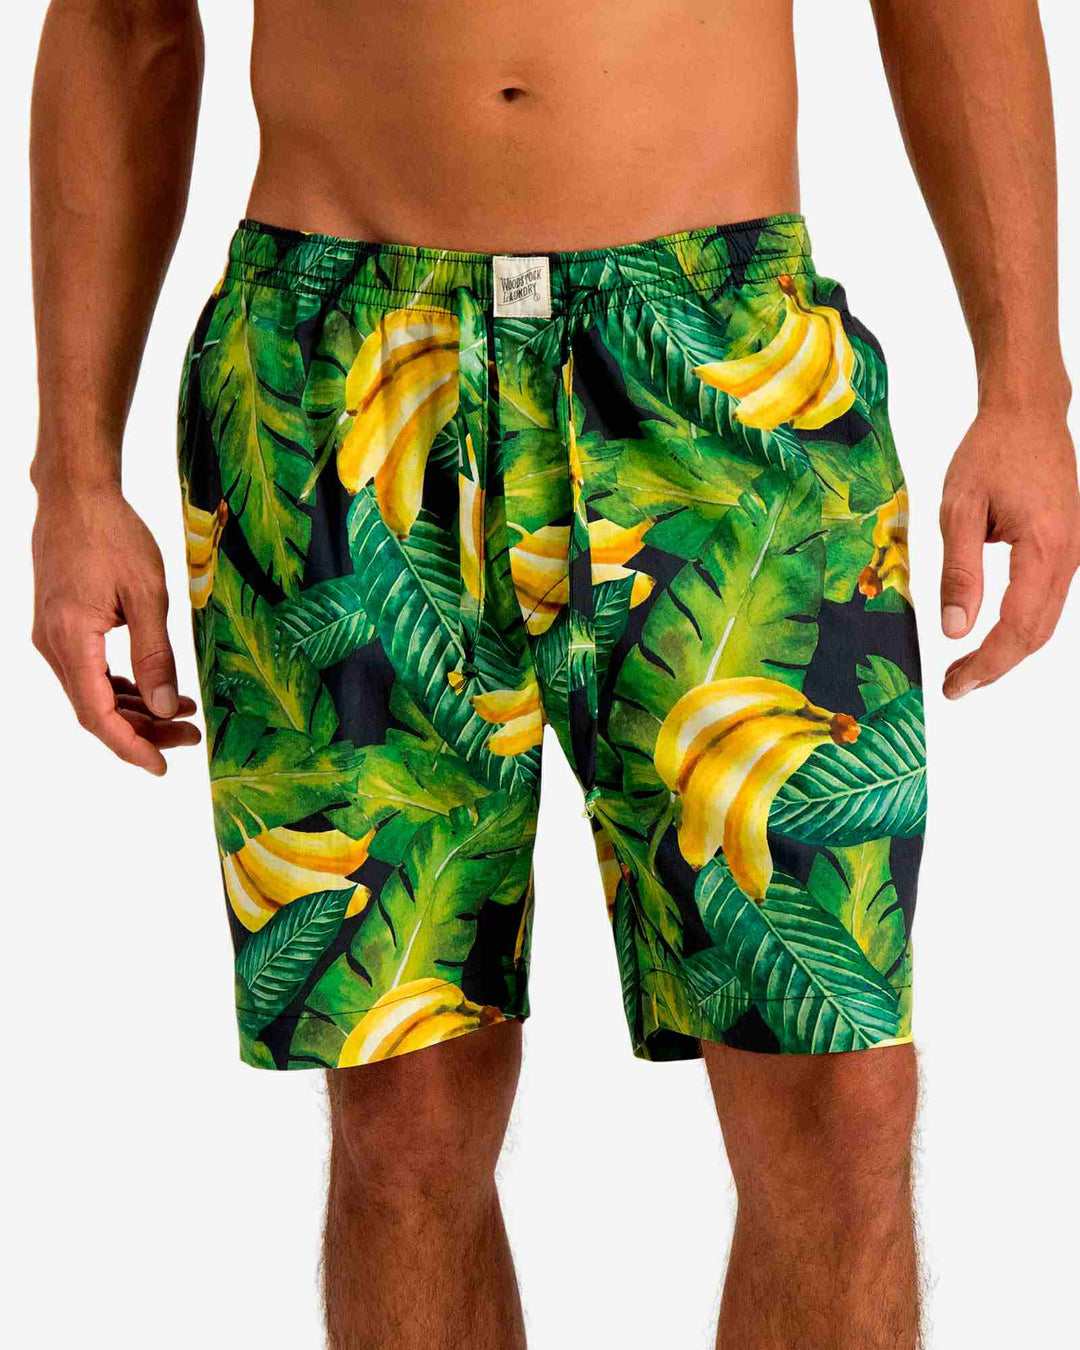 Mens green shorts - bananas on leaves